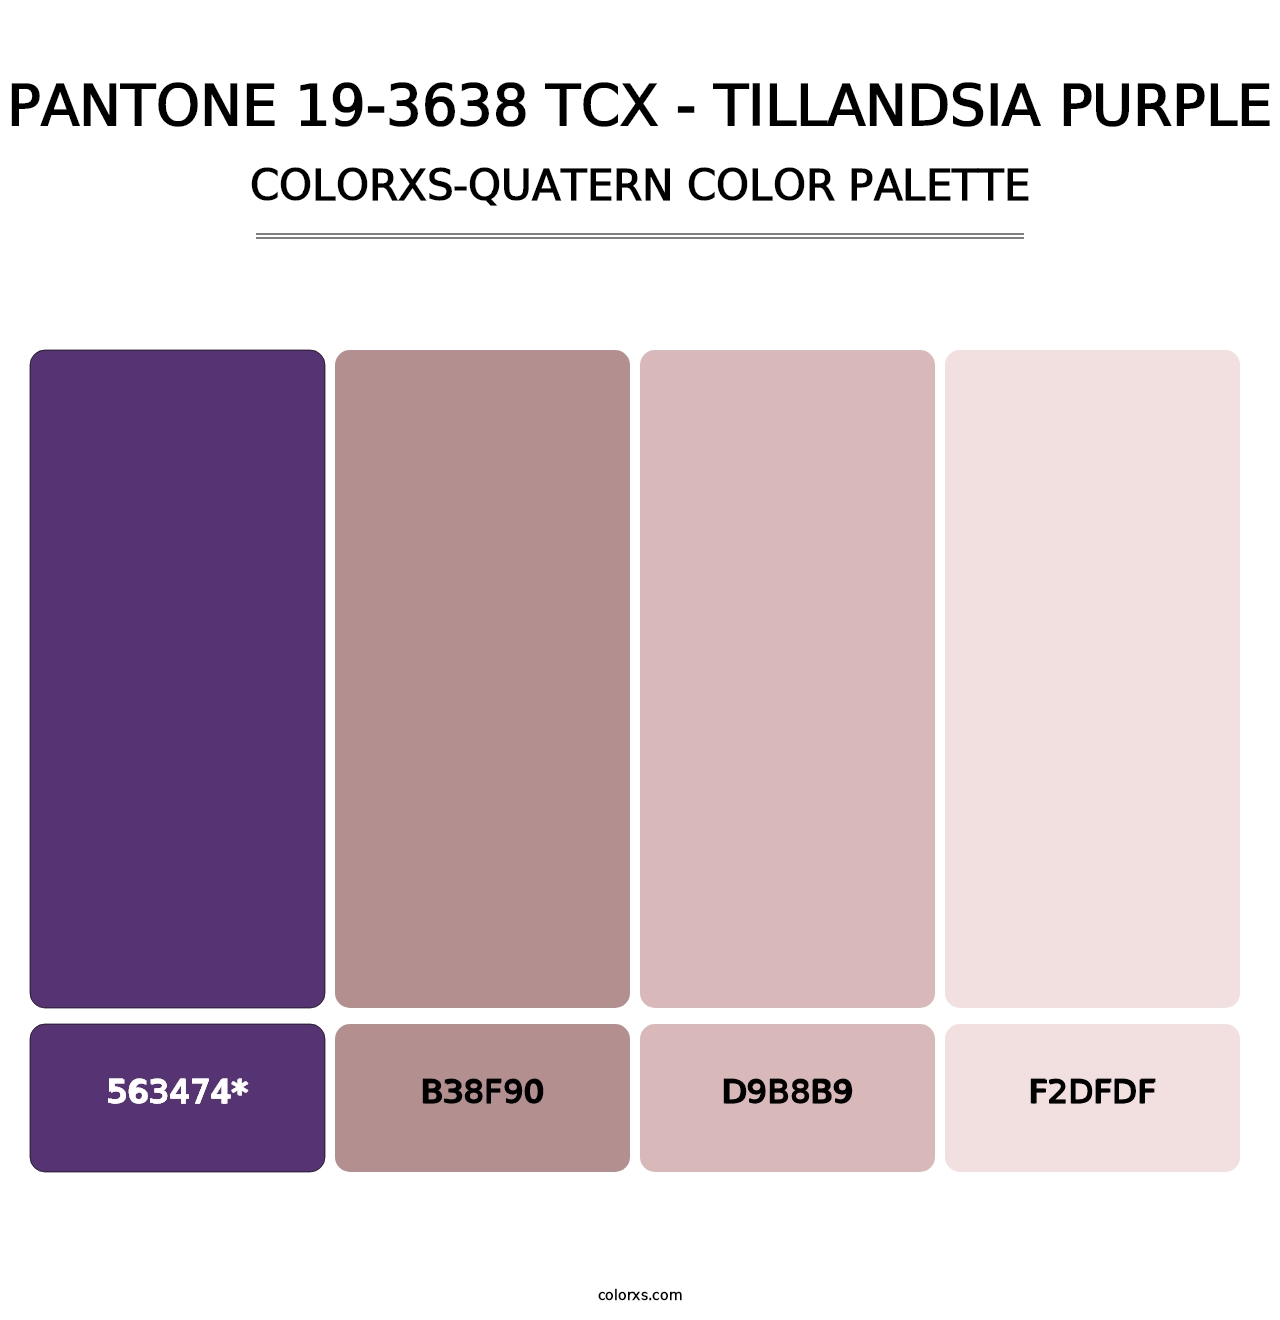 PANTONE 19-3638 TCX - Tillandsia Purple - Colorxs Quatern Palette